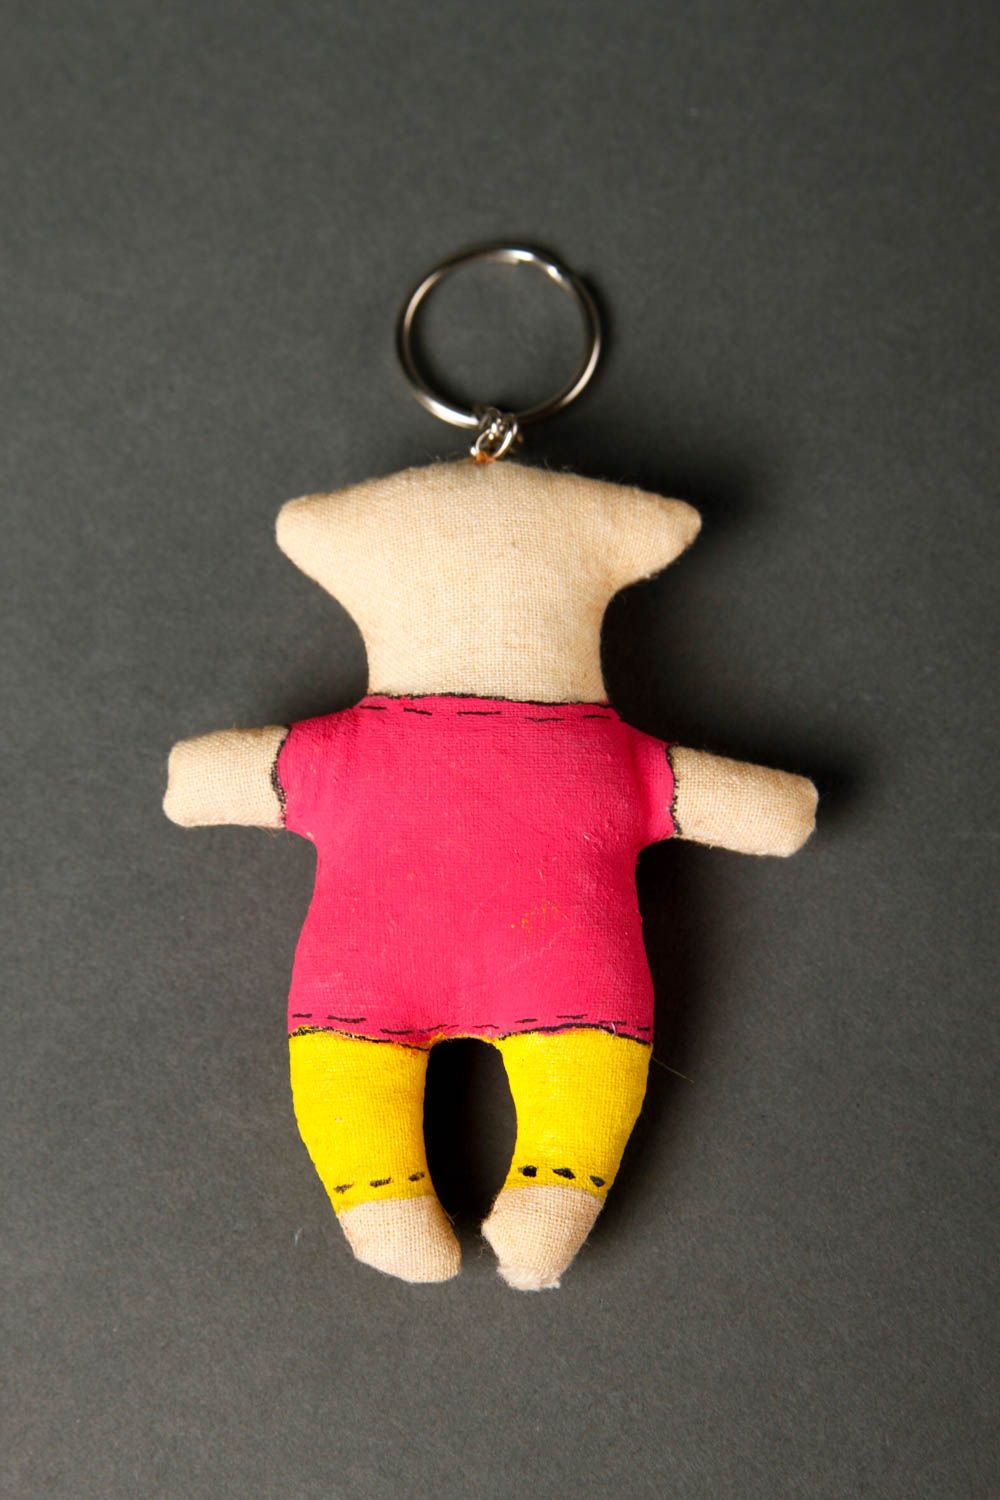 Handmade keychain designer keychain unusual souvenir gift ideas gift for kids photo 4